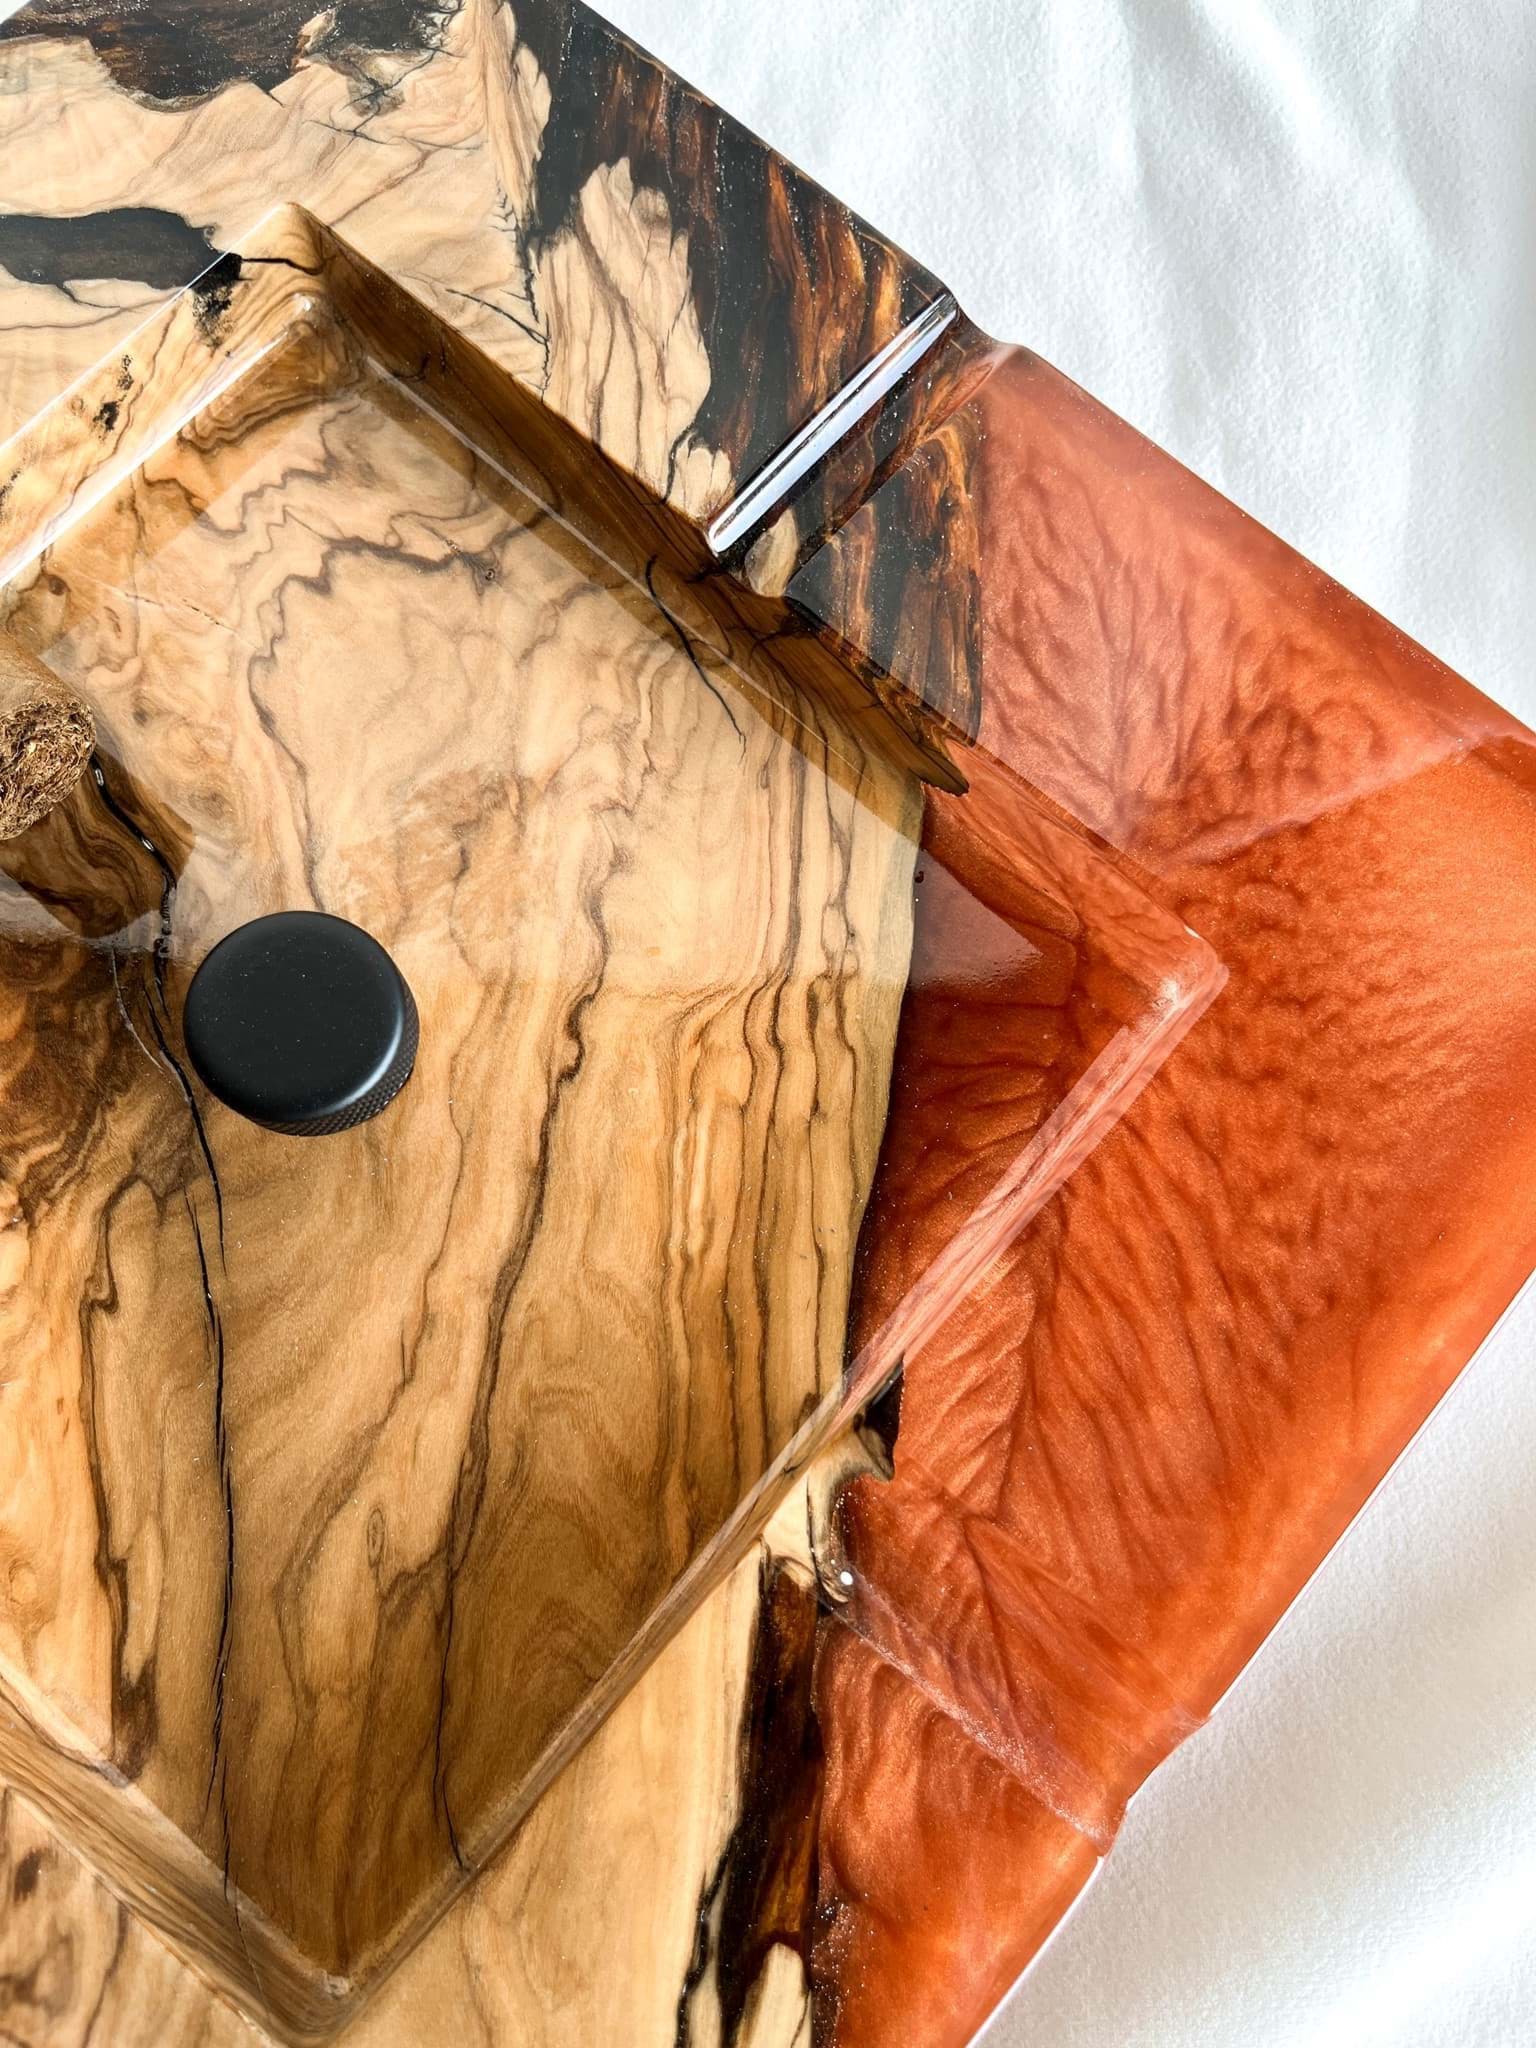 Puro Küllüğü - Turuncu Epoksi ve Zeytin Ağacı ile Özel Tasarım resmi